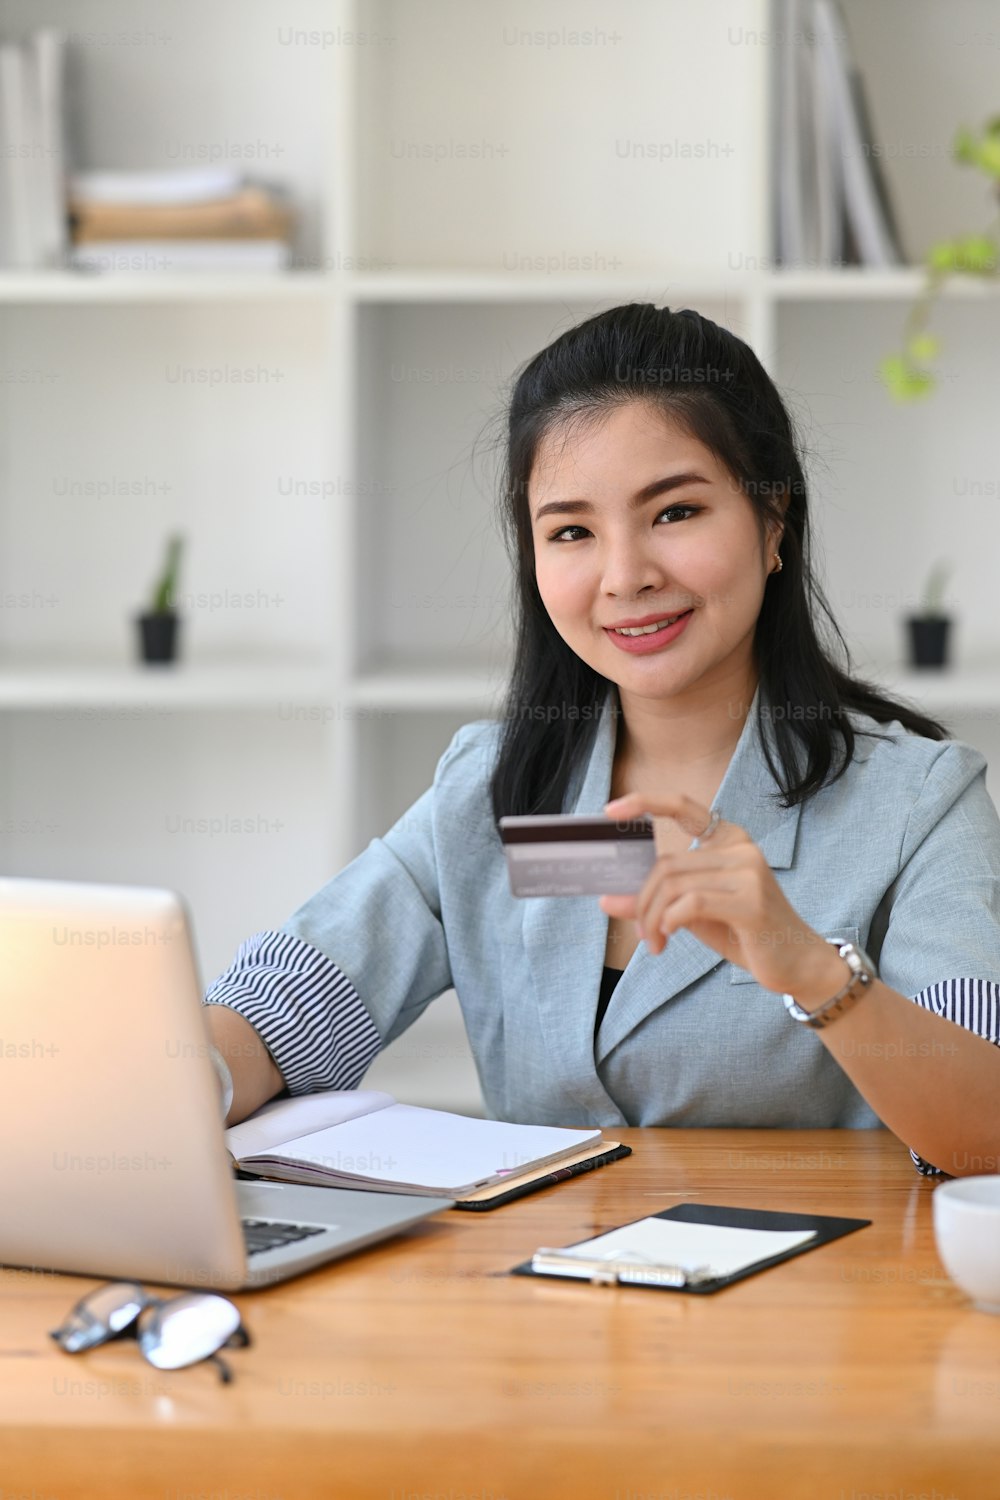 Retrato da mulher asiática jovem que fura o cartão de crédito e usa o laptop do computador para o pagamento on-line.